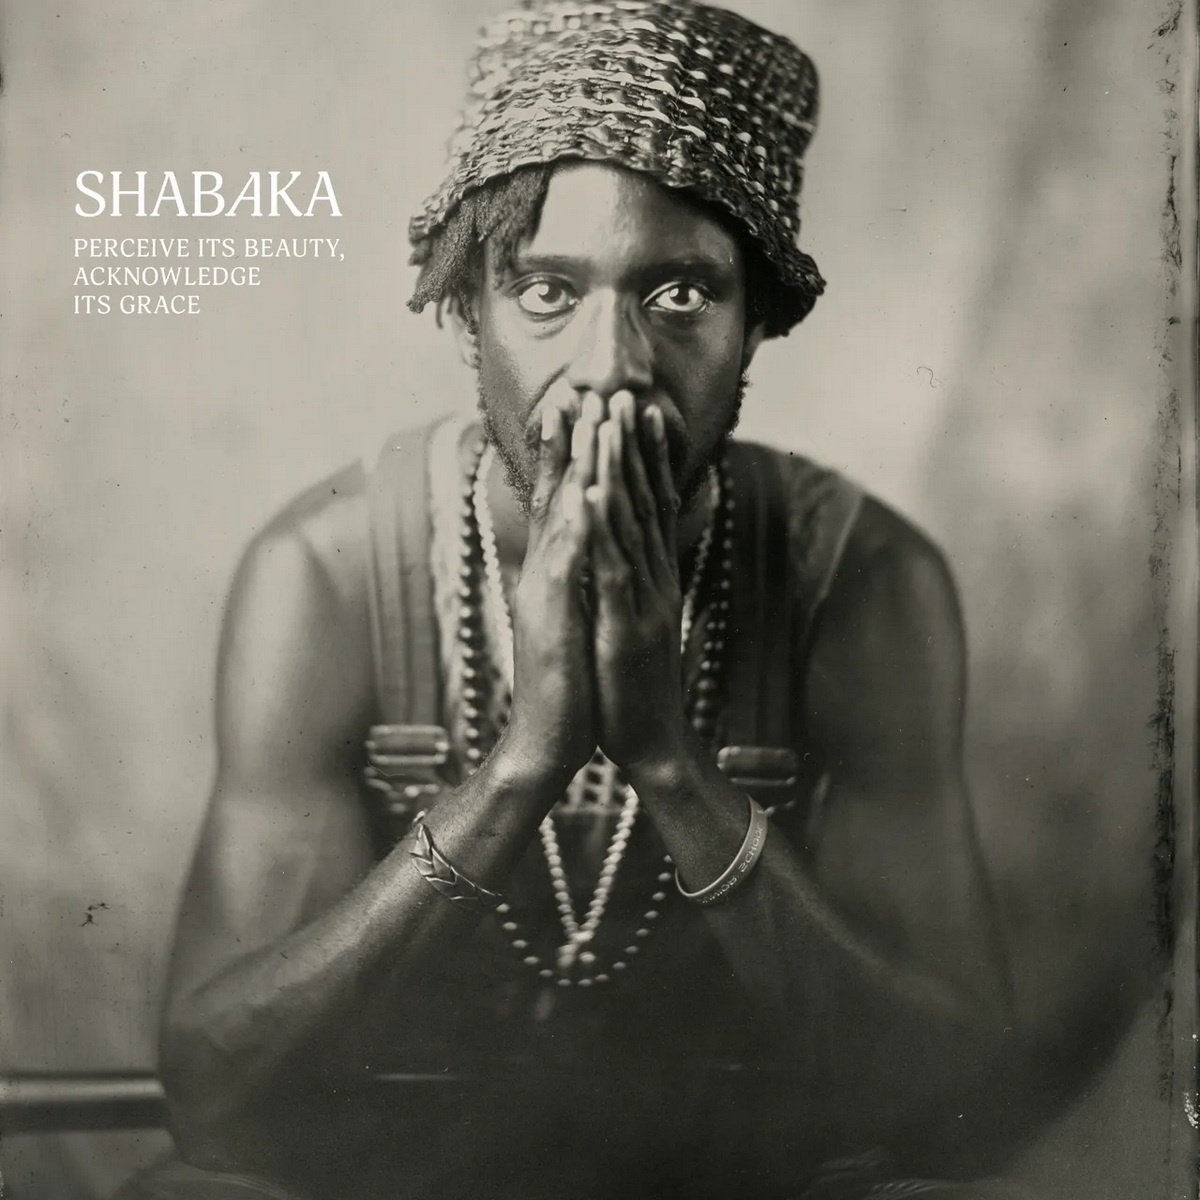 Shabaka „Perceive its Beauty, Acknowledge its Grace” ⸜ premiera nowego albumu w wydawnictwie Impulse!